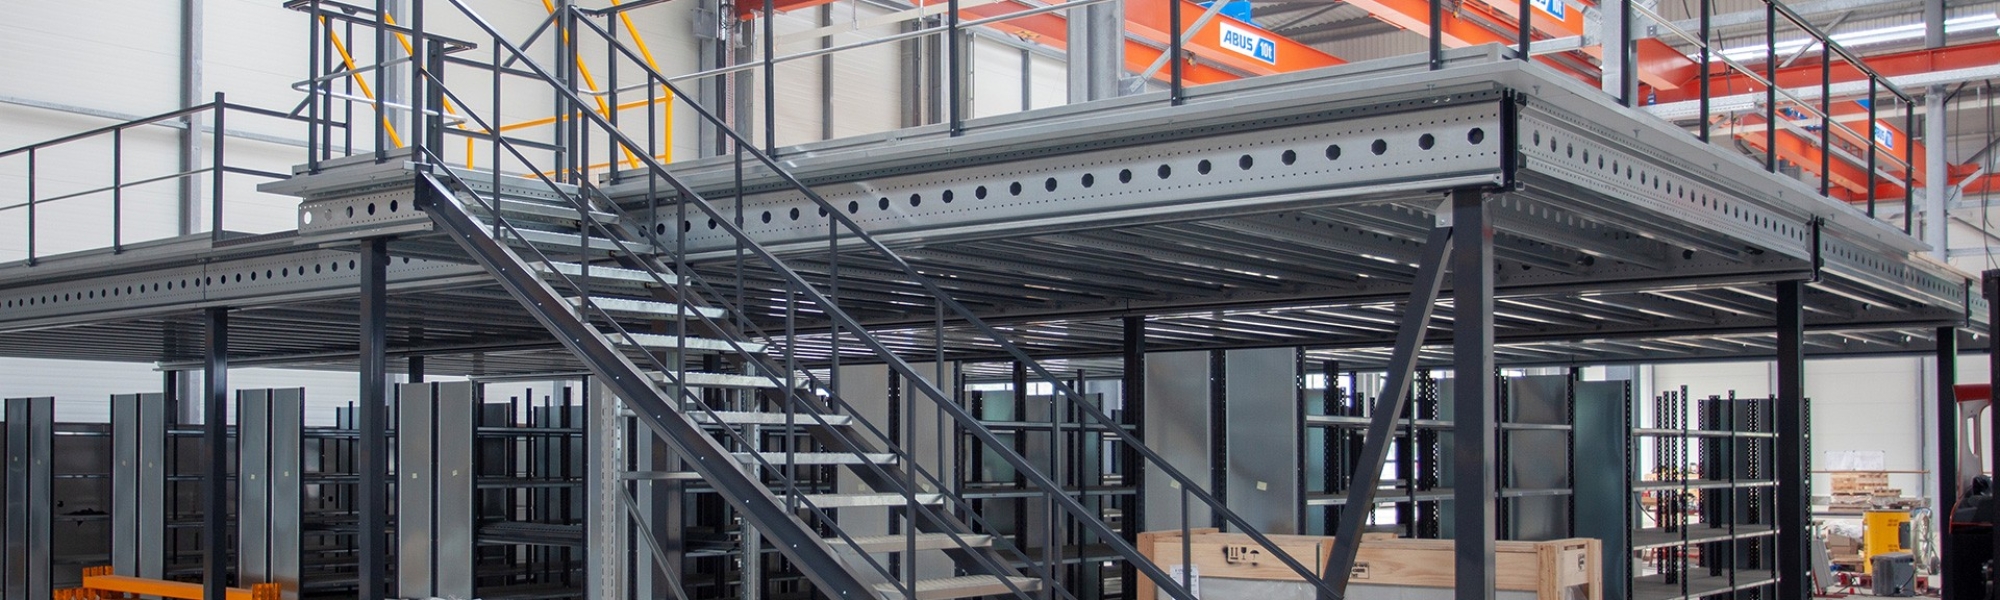 Mezzanine métallique à niveau uni avec escalier et barrière écluse au sein d'un entrepôt
											